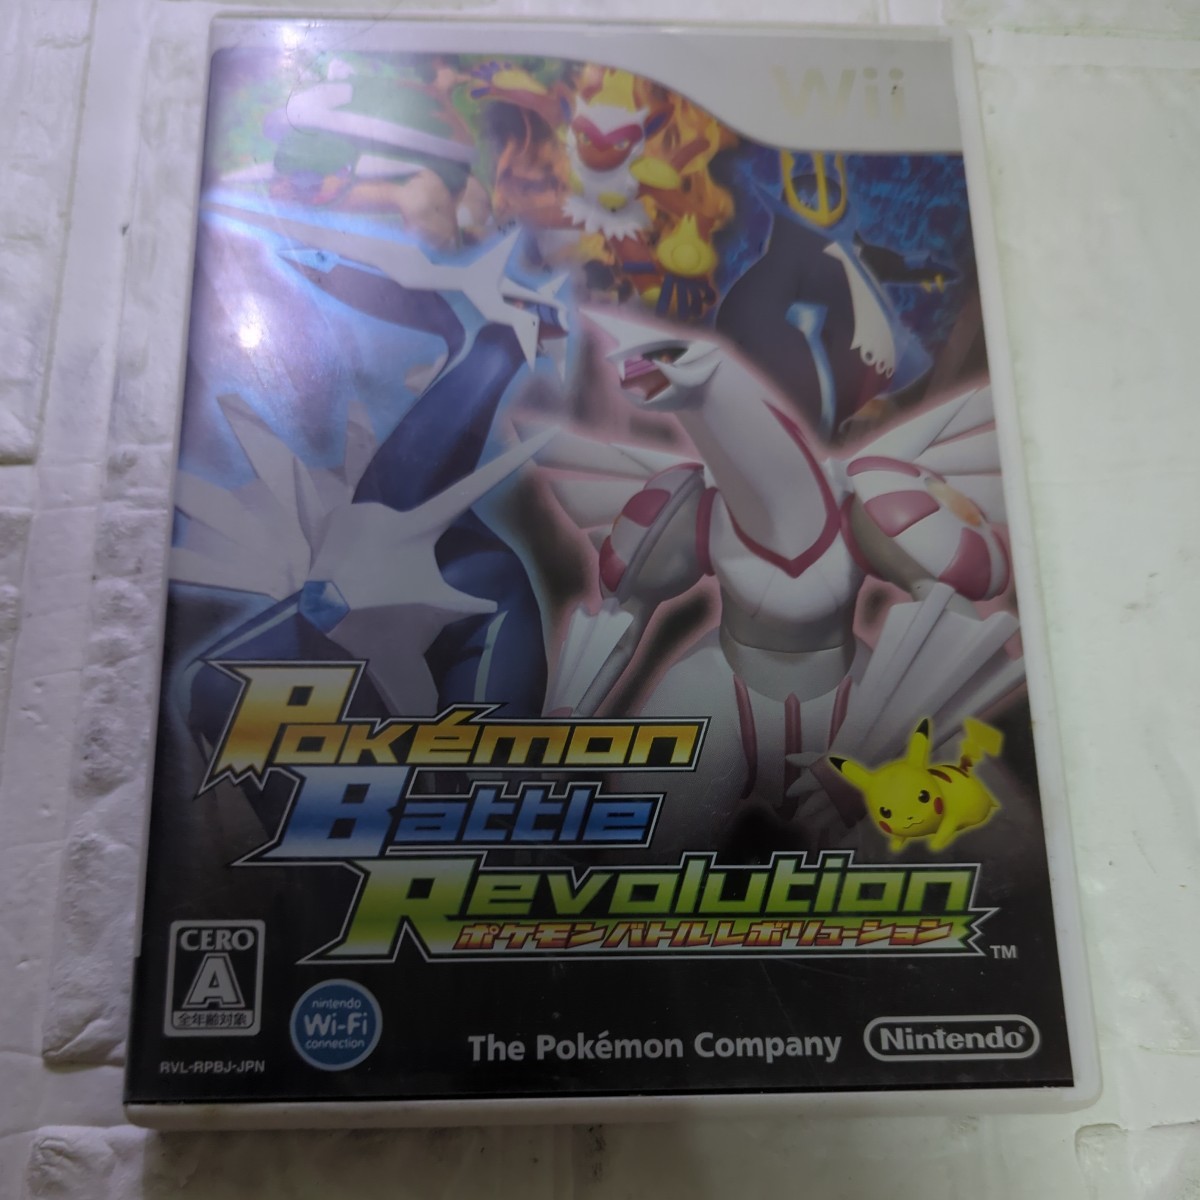  пустой коробка как распродажа диск. в подарок инструкция по эксплуатации нет [Wii] Pokemon Battle Revolution 